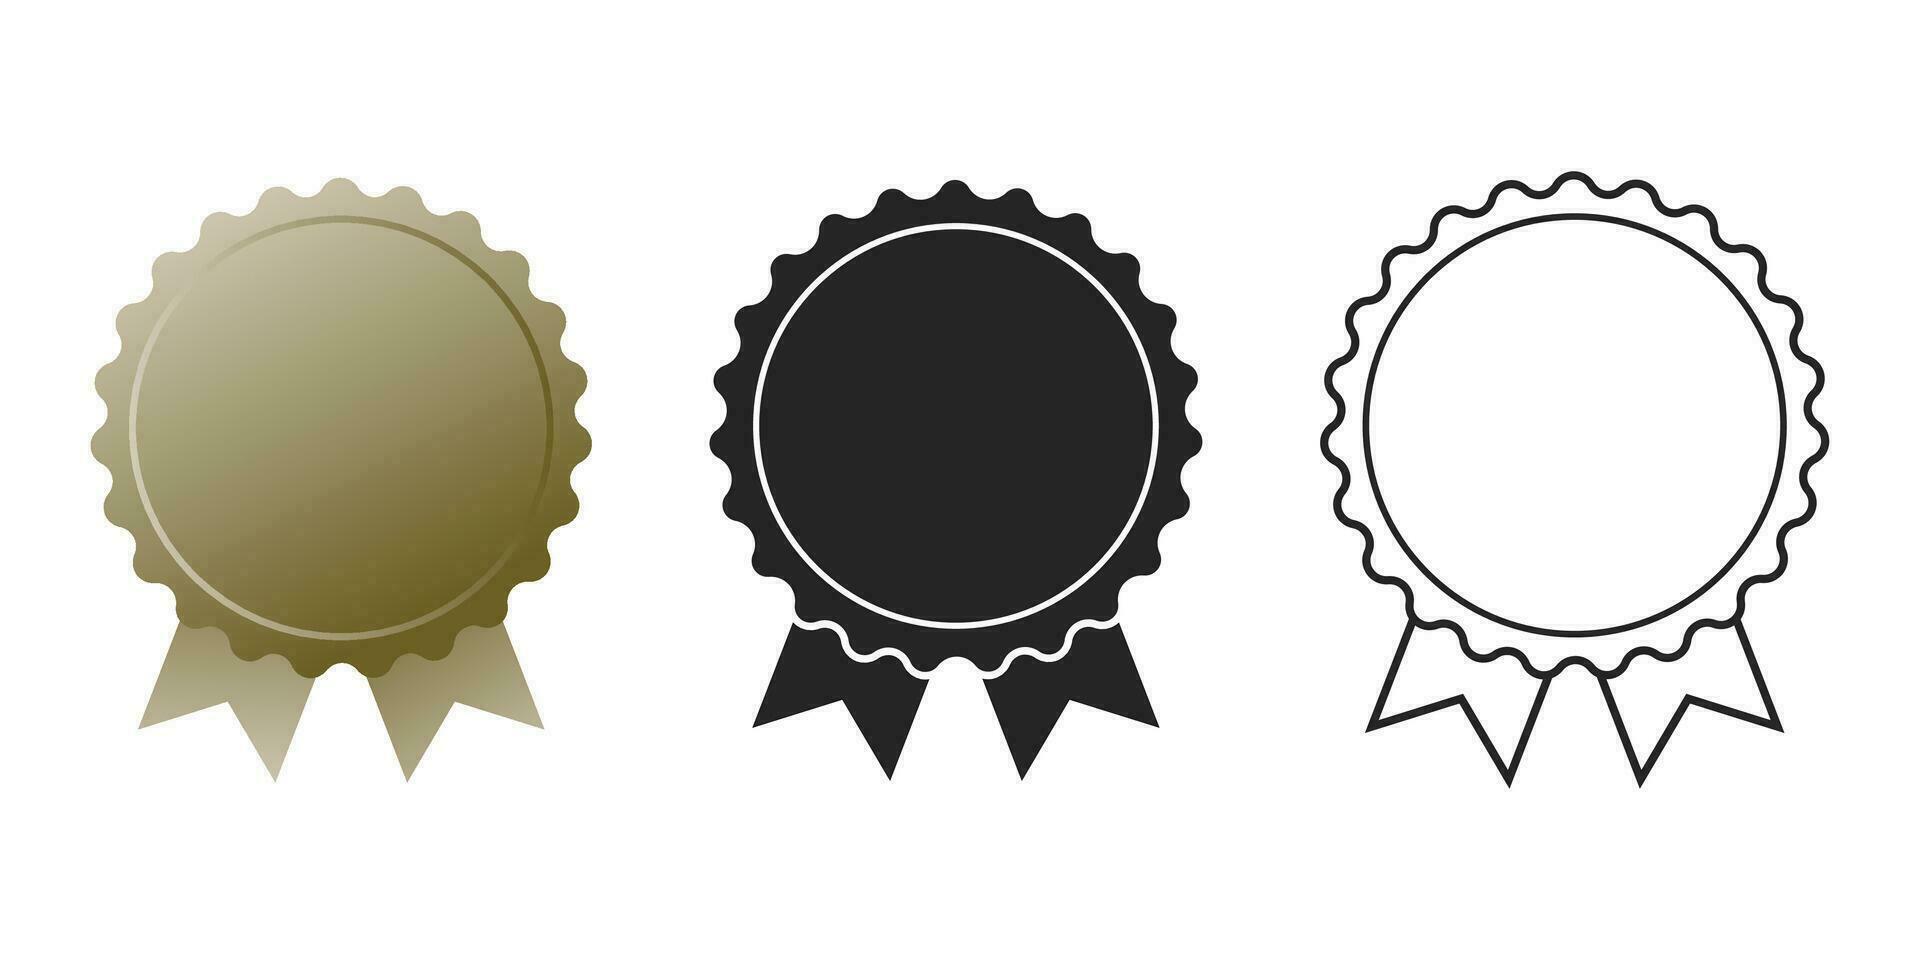 Awards set icon. ribbons set. vector